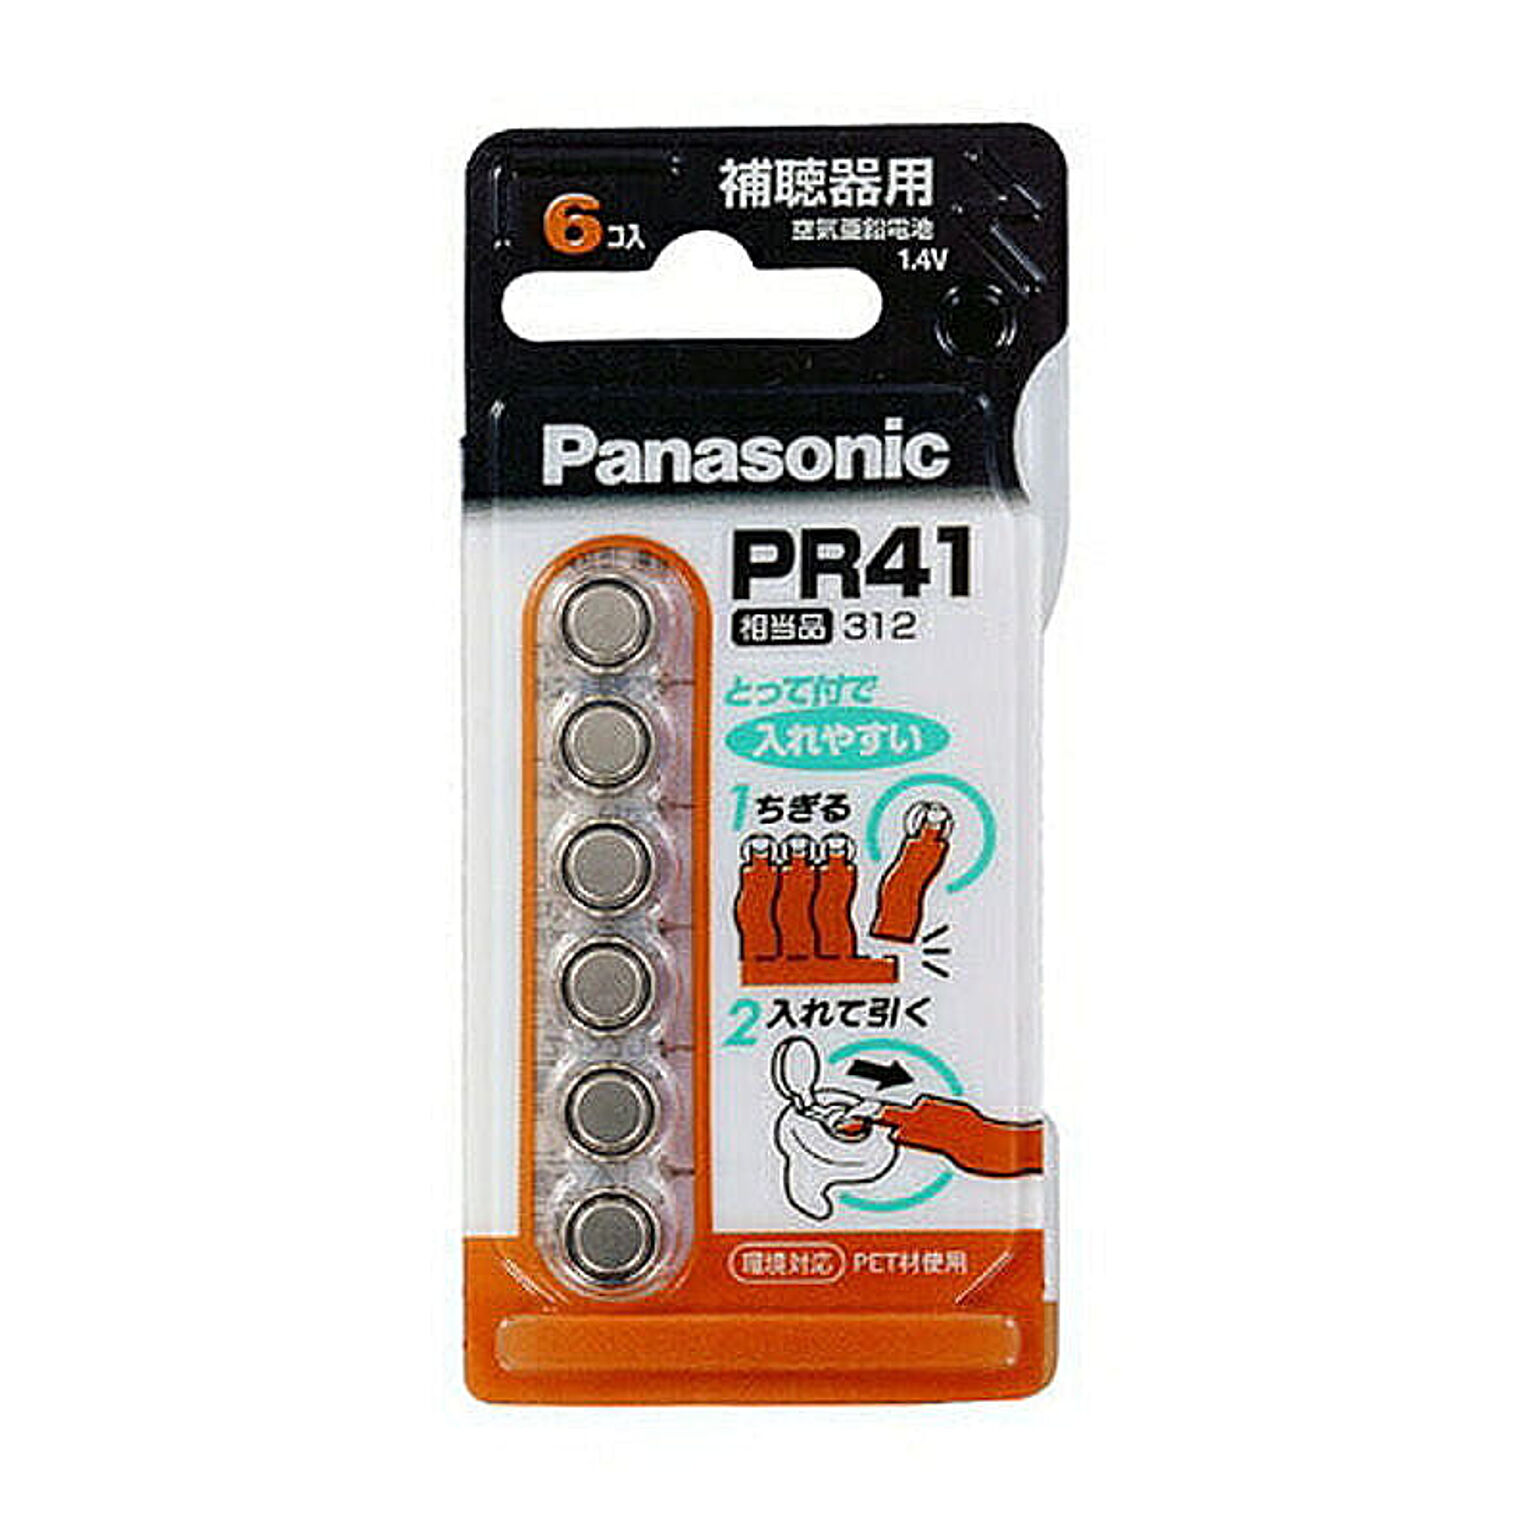 パナソニック Panasonic 空気亜鉛電池 1.4V 6個入 PR-41/6P PR41 管理No. 4984824530515